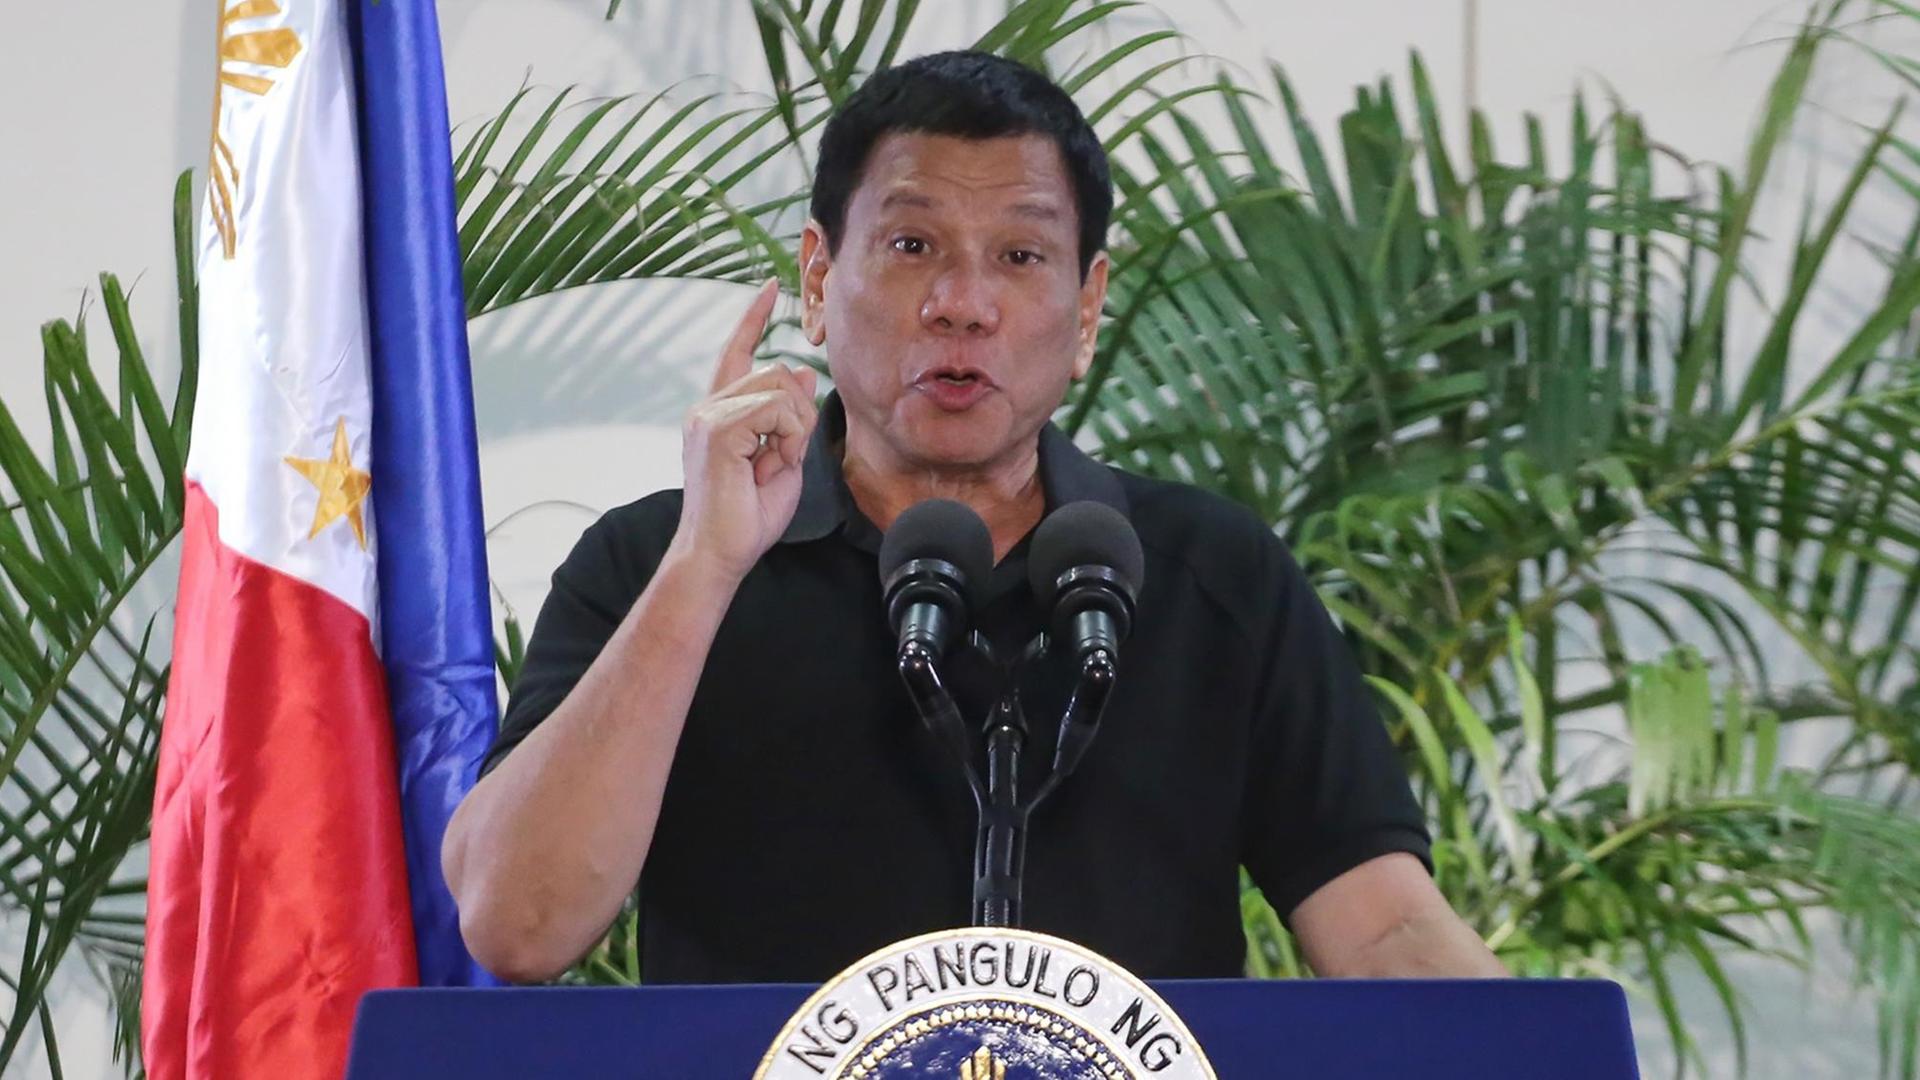 Duterte steht neben einer Flagge und hält eine Rede.